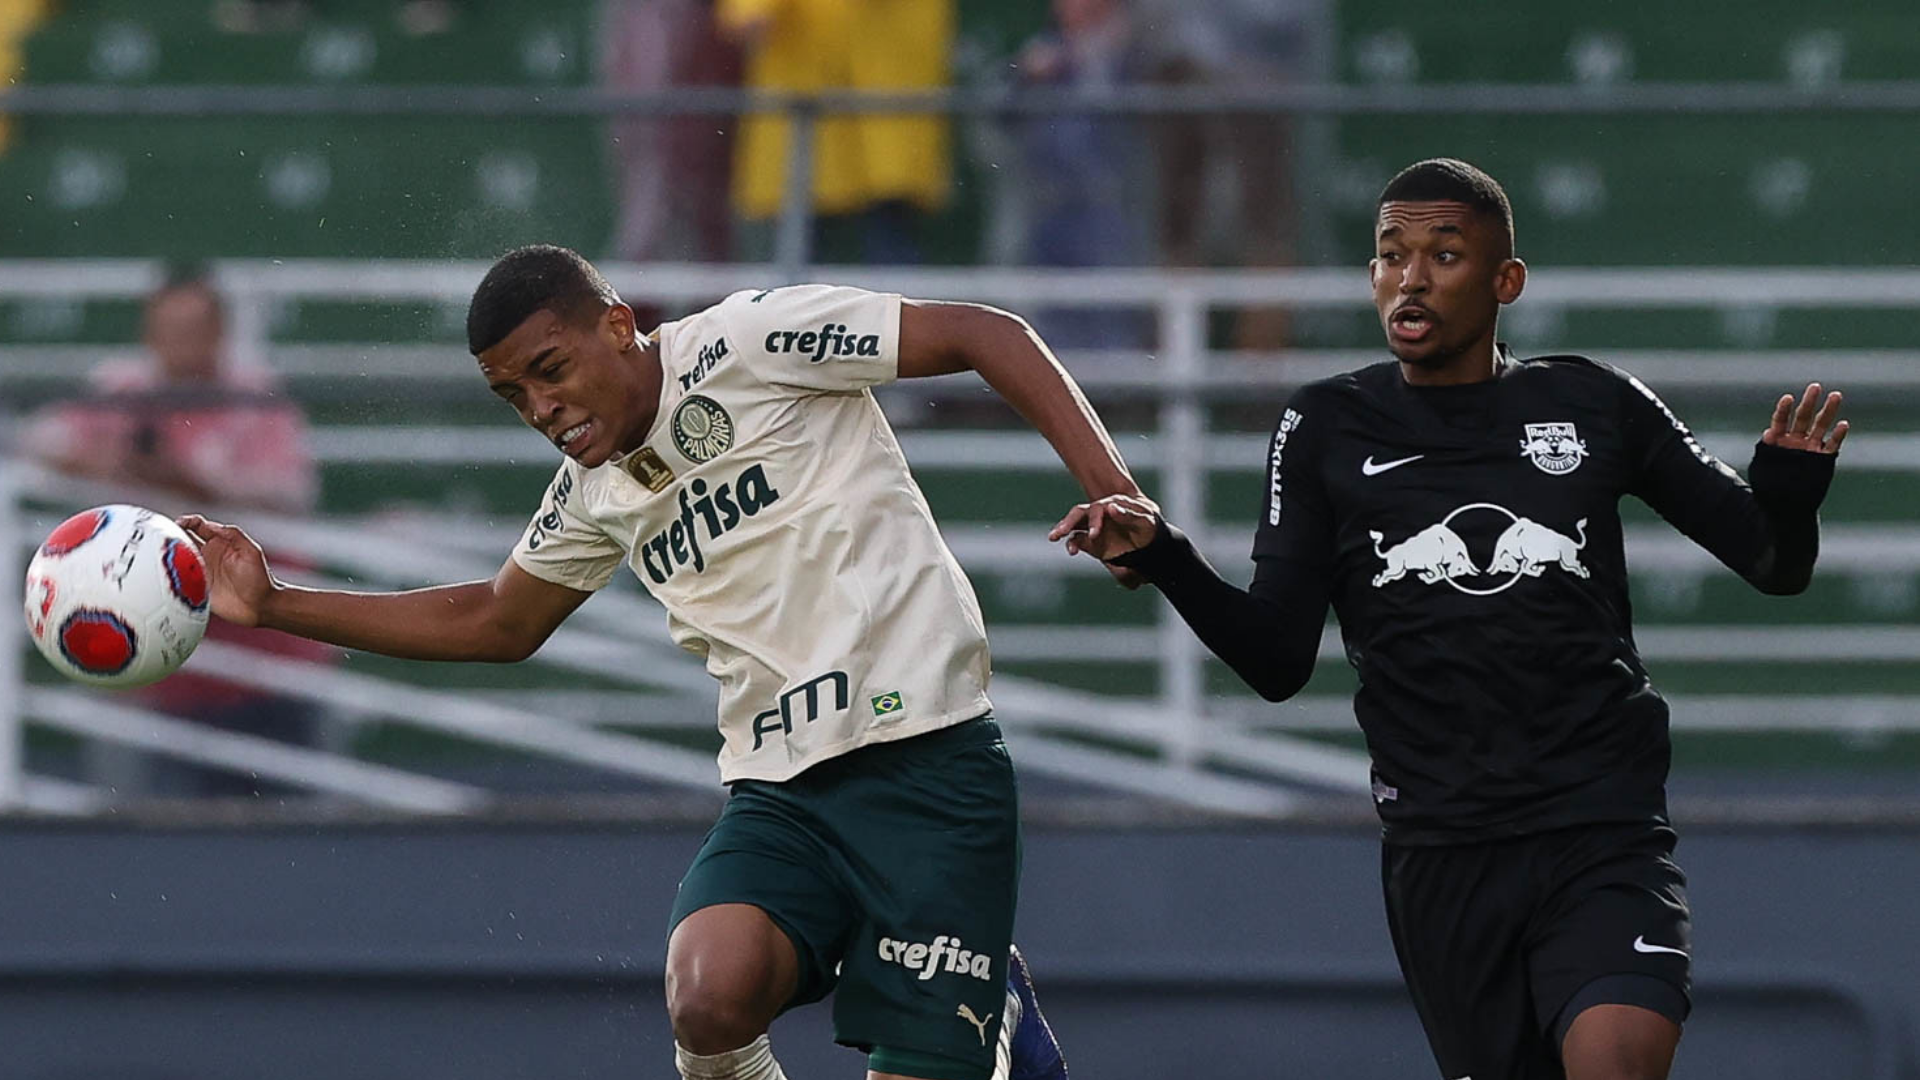 Hora da semifinal: Campeonato Paulista chega na fase decisiva